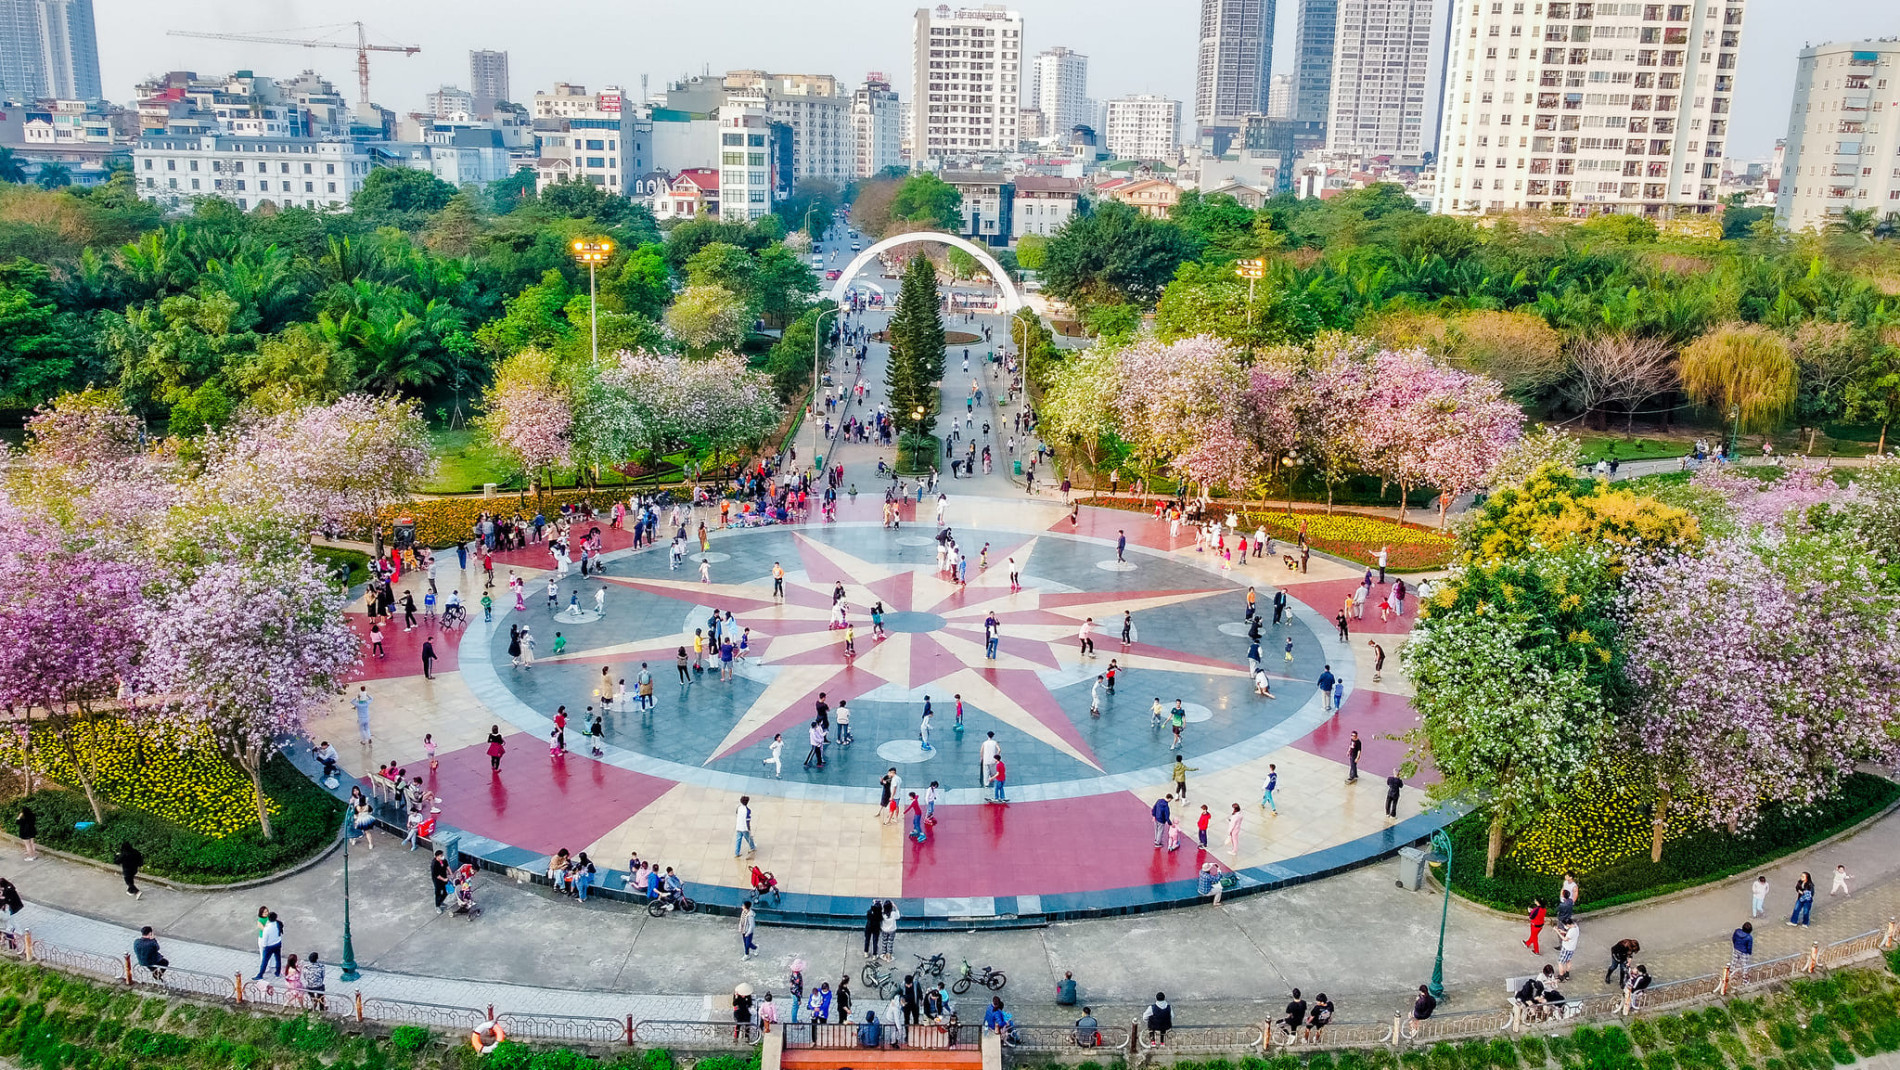 Hoa ban phủ tím góc công viên Hà Nội, cảnh đẹp ngỡ ngàng như ở trời Âu